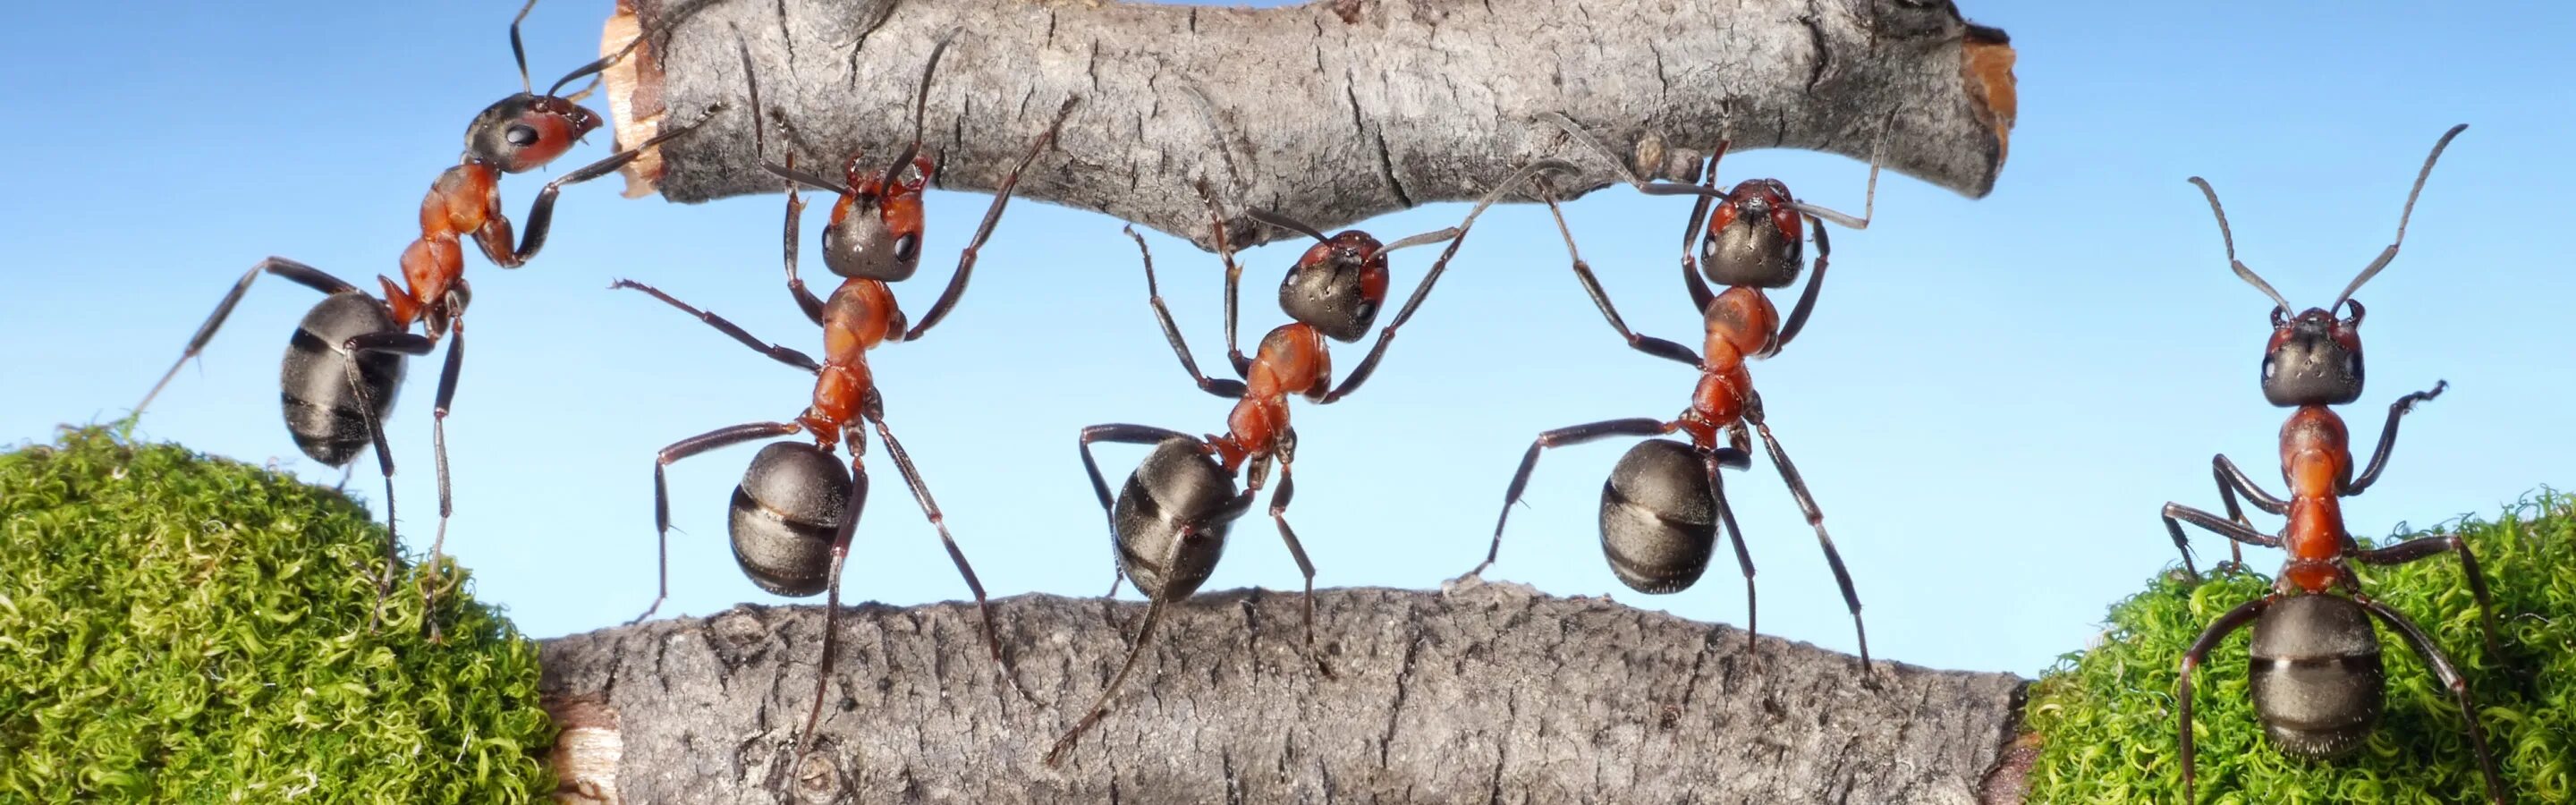 Гигантский муравей древоточец. Красногрудый муравей-древоточец. Муравьи трудятся. Трудолюбивый муравей. Несмотря на муравьиную склонность объединять свои